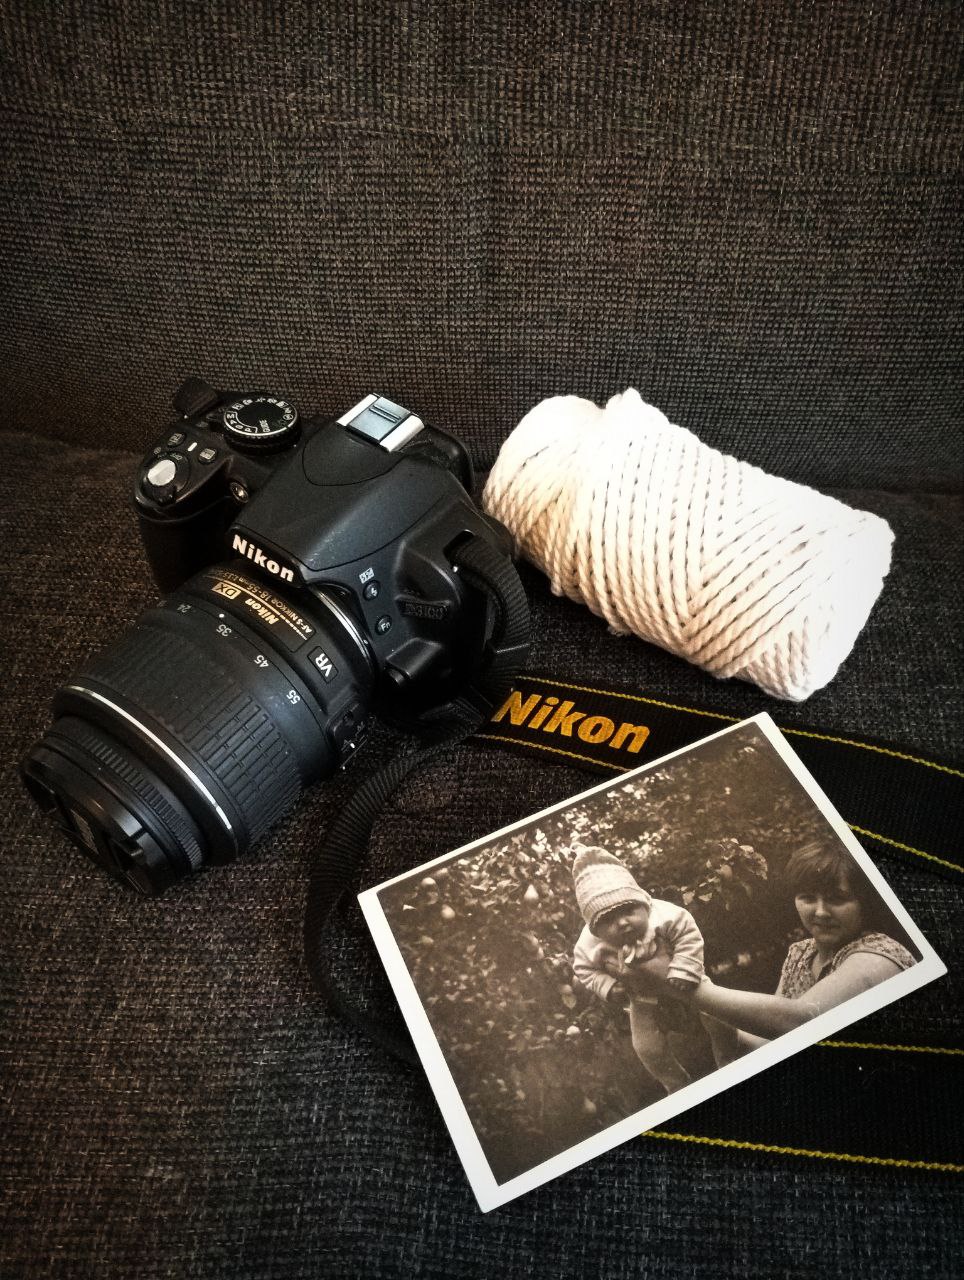 Nikon speilreflekskamera sammen med et svart-hvitt bilde 